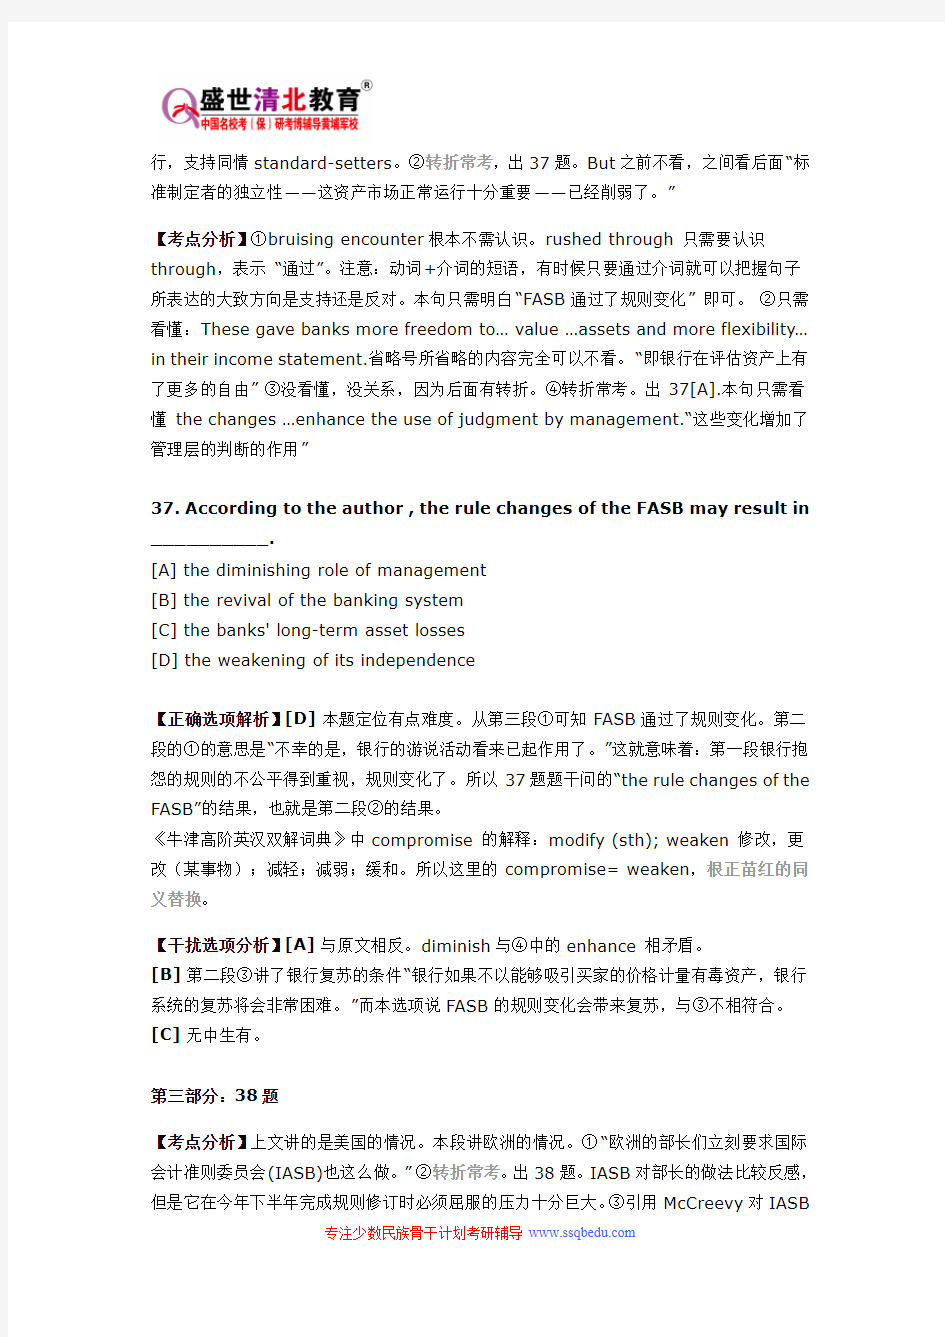 北京工商大学少数民族骨干计划考研英语真题、笔记、参考书、大纲、录取分数线、报录比